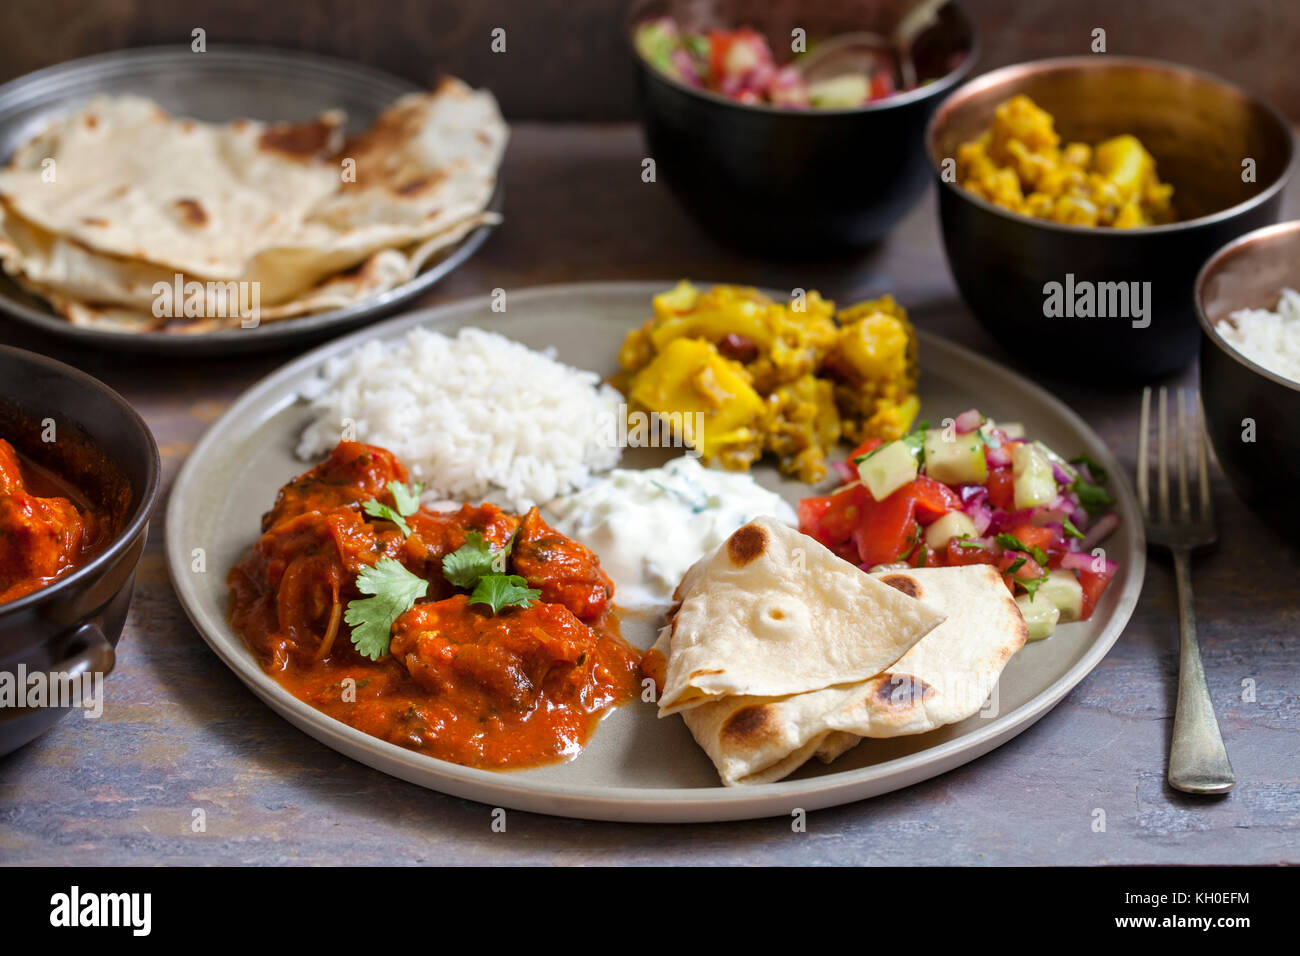 Repas indien avec du poulet tikka masala, Aloo Gobi, raita, salade et pain plats Banque D'Images